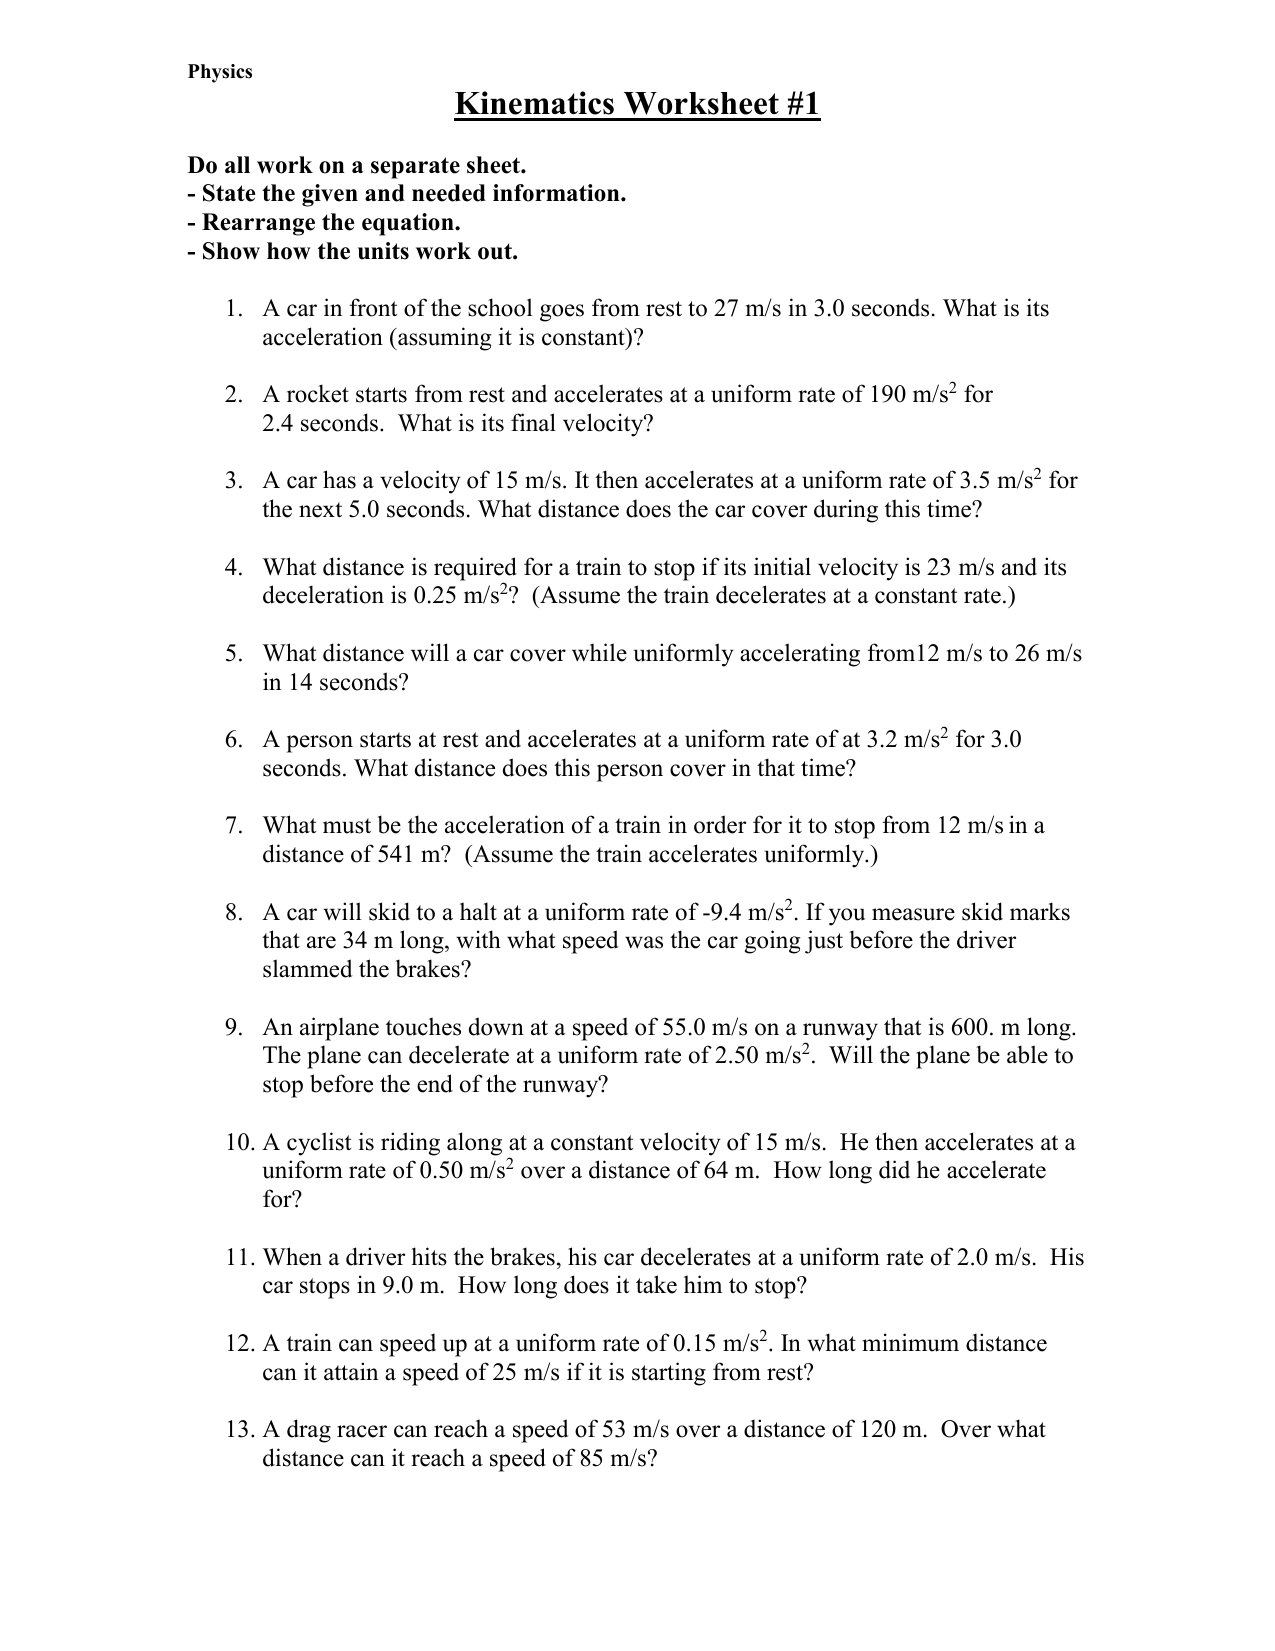 Kinematics Worksheet For Kinematics Practice Problems Worksheet